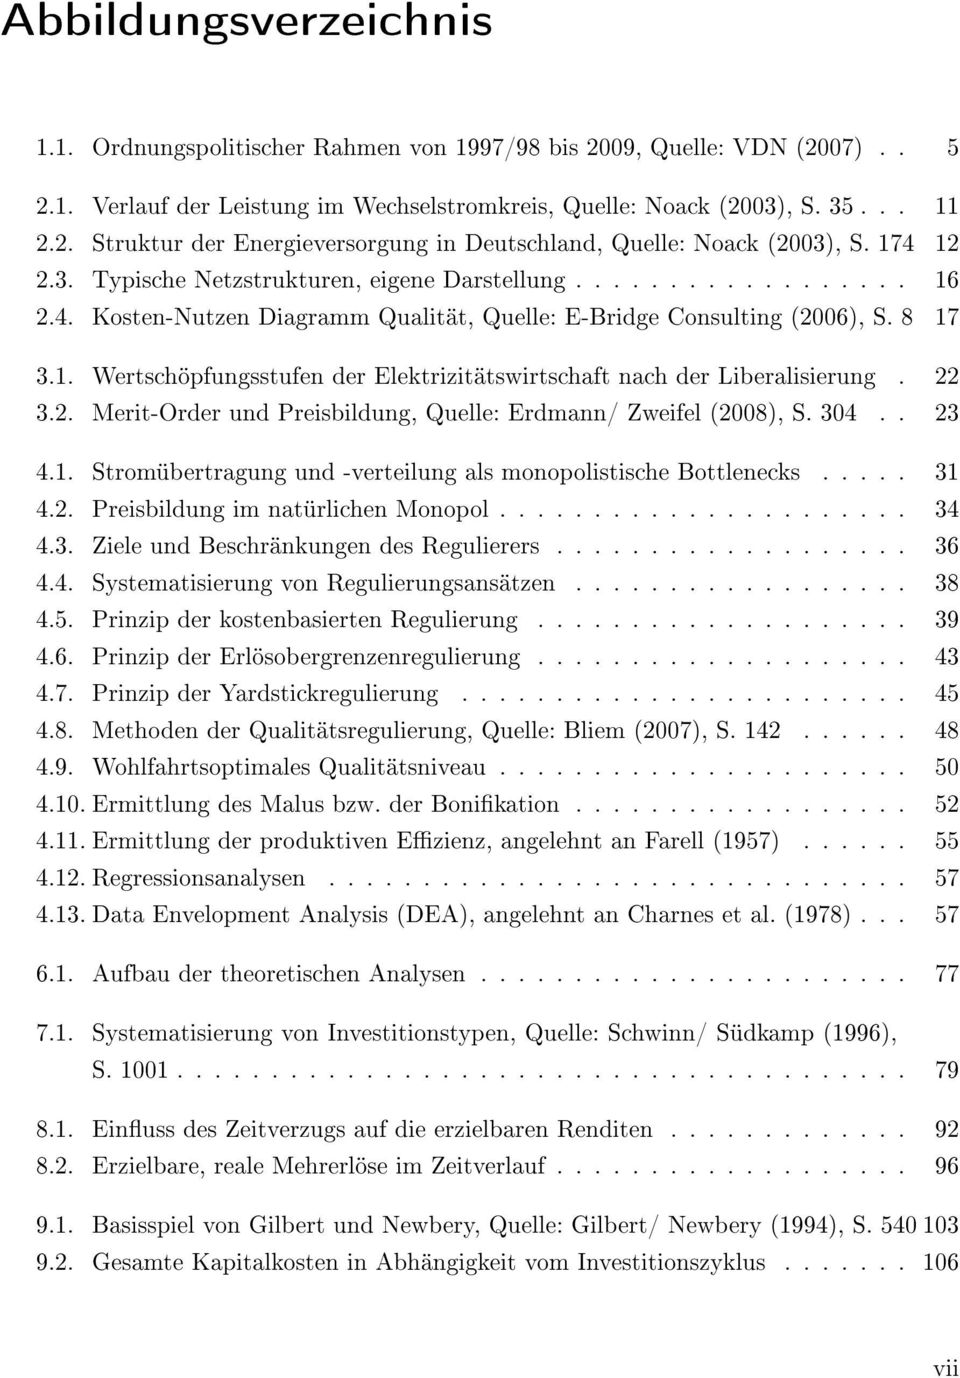 22 3.2. Merit-Order und Preisbildung, Quelle: Erdmann/ Zweifel (2008), S. 304.. 23 4.1. Stromübertragung und -verteilung als monopolistische Bottlenecks..... 31 4.2. Preisbildung im natürlichen Monopol.